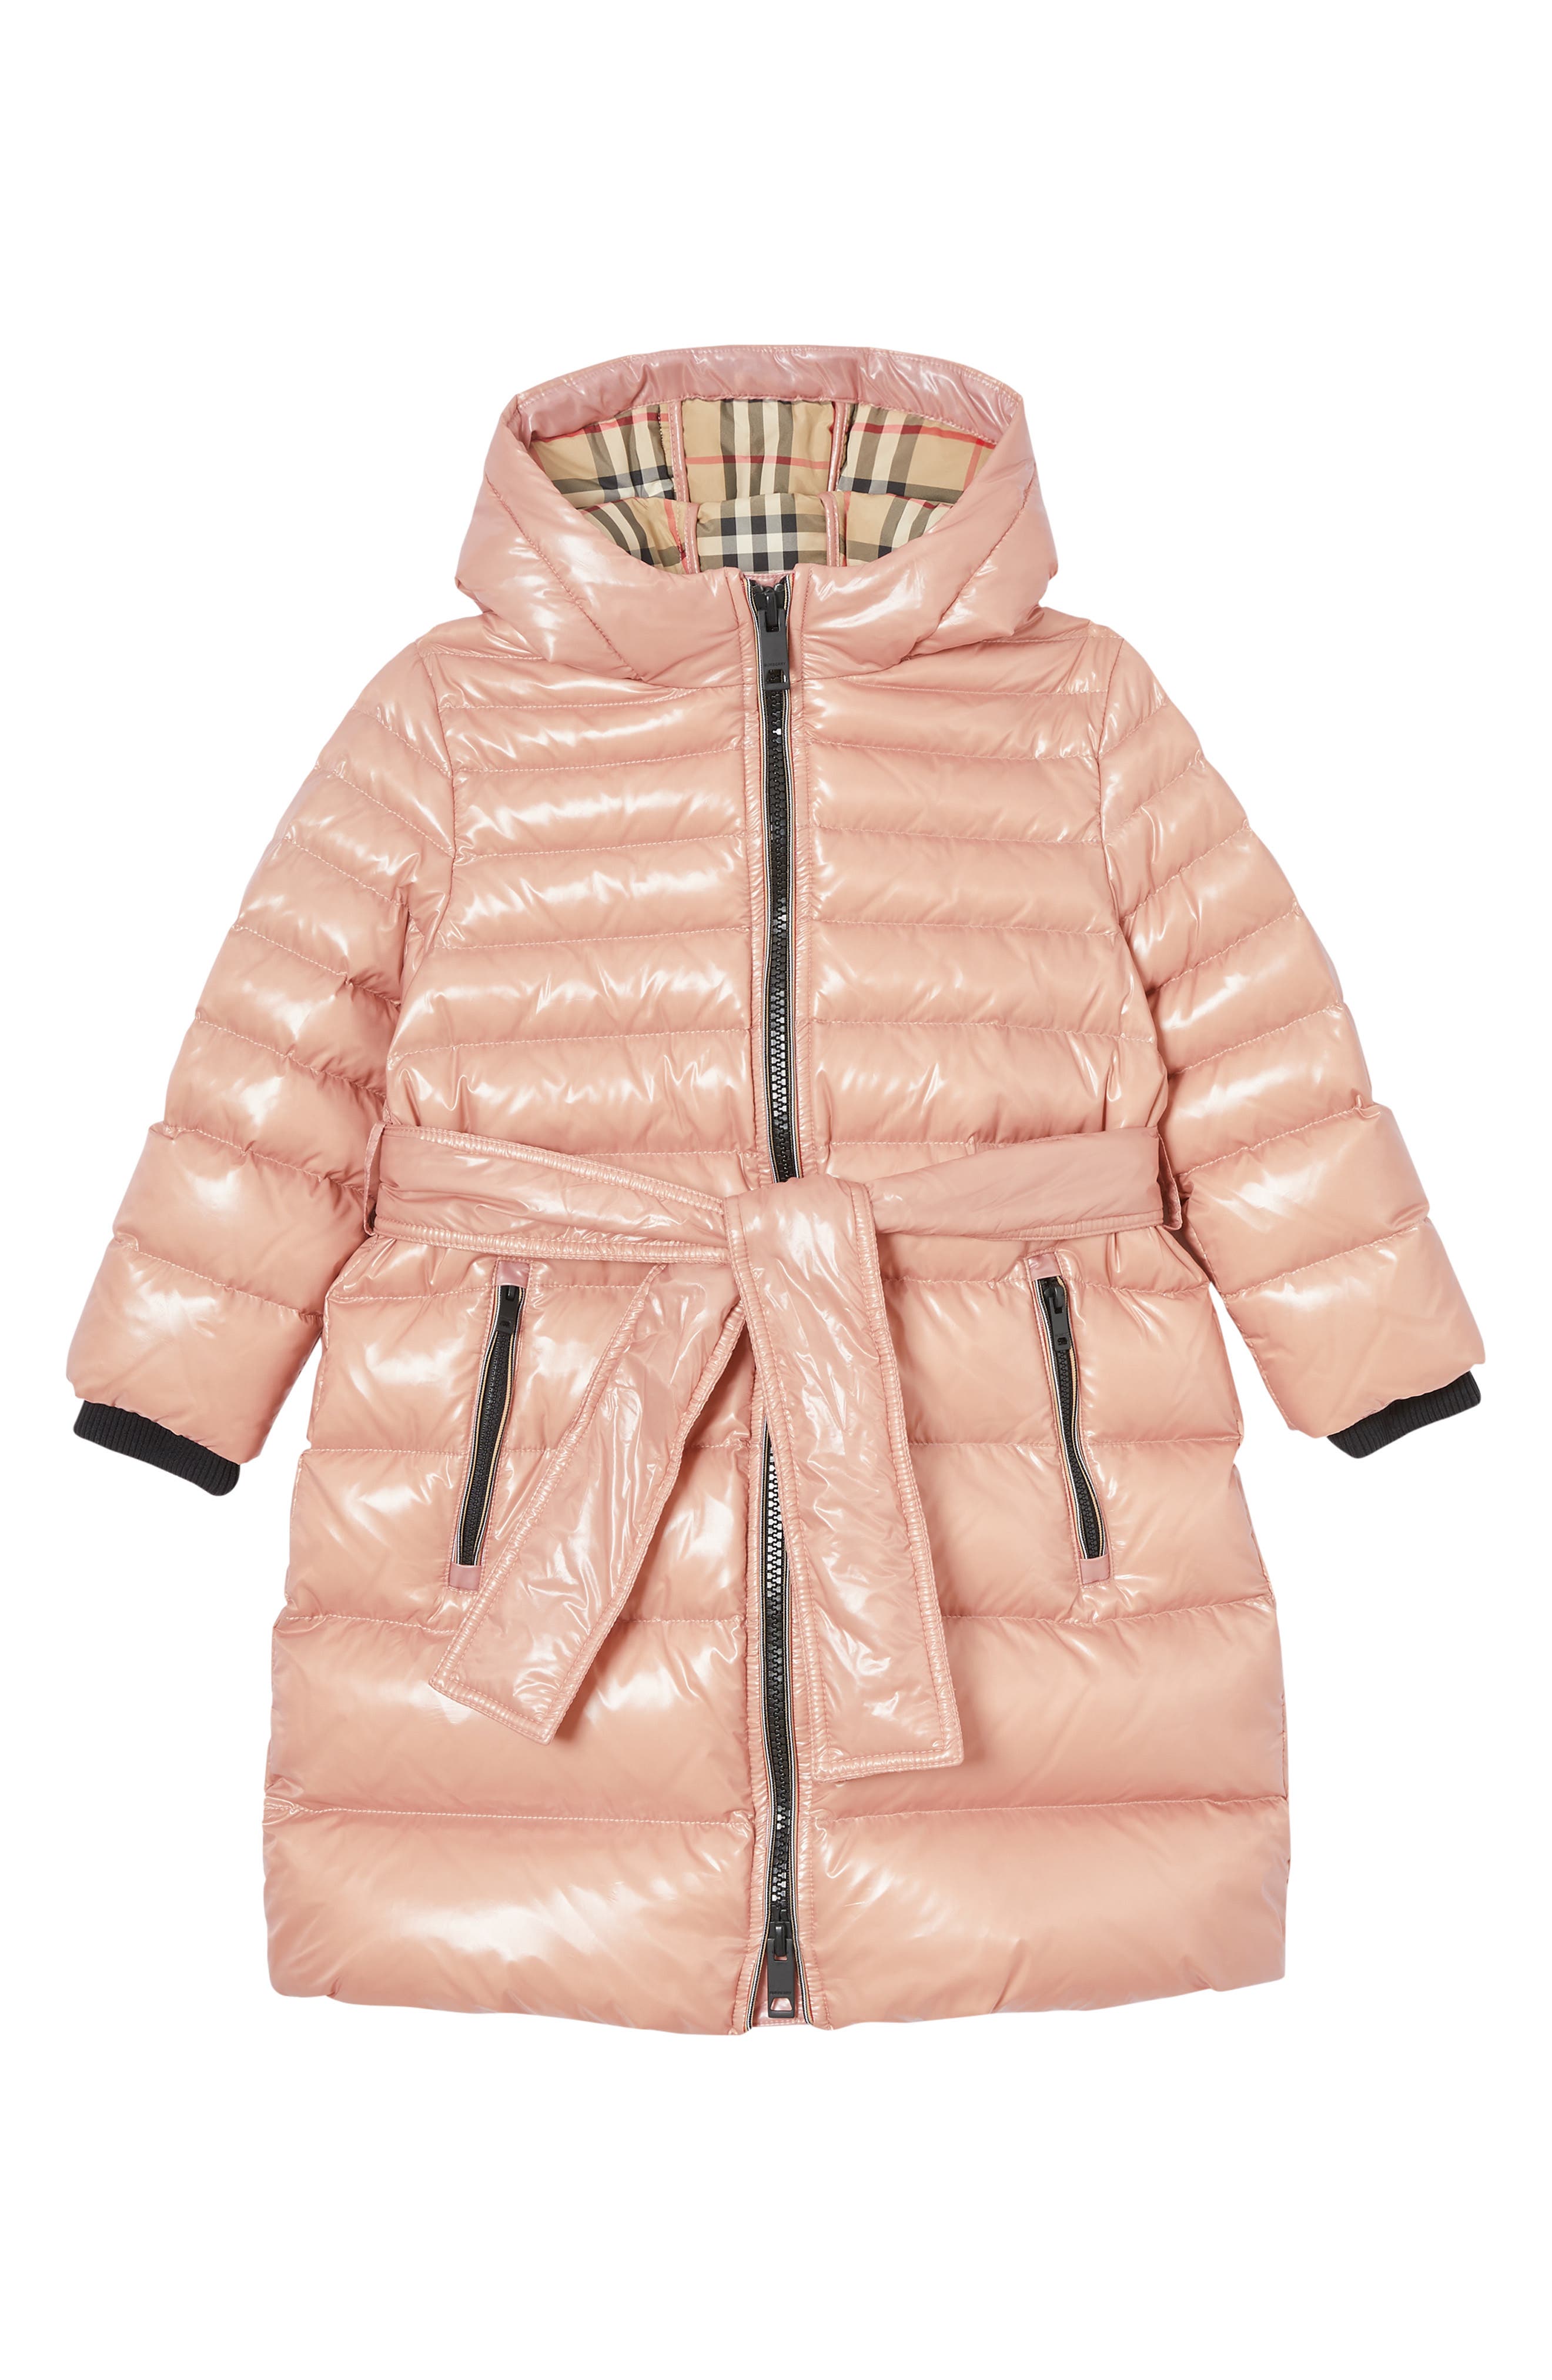 girls burberry coat